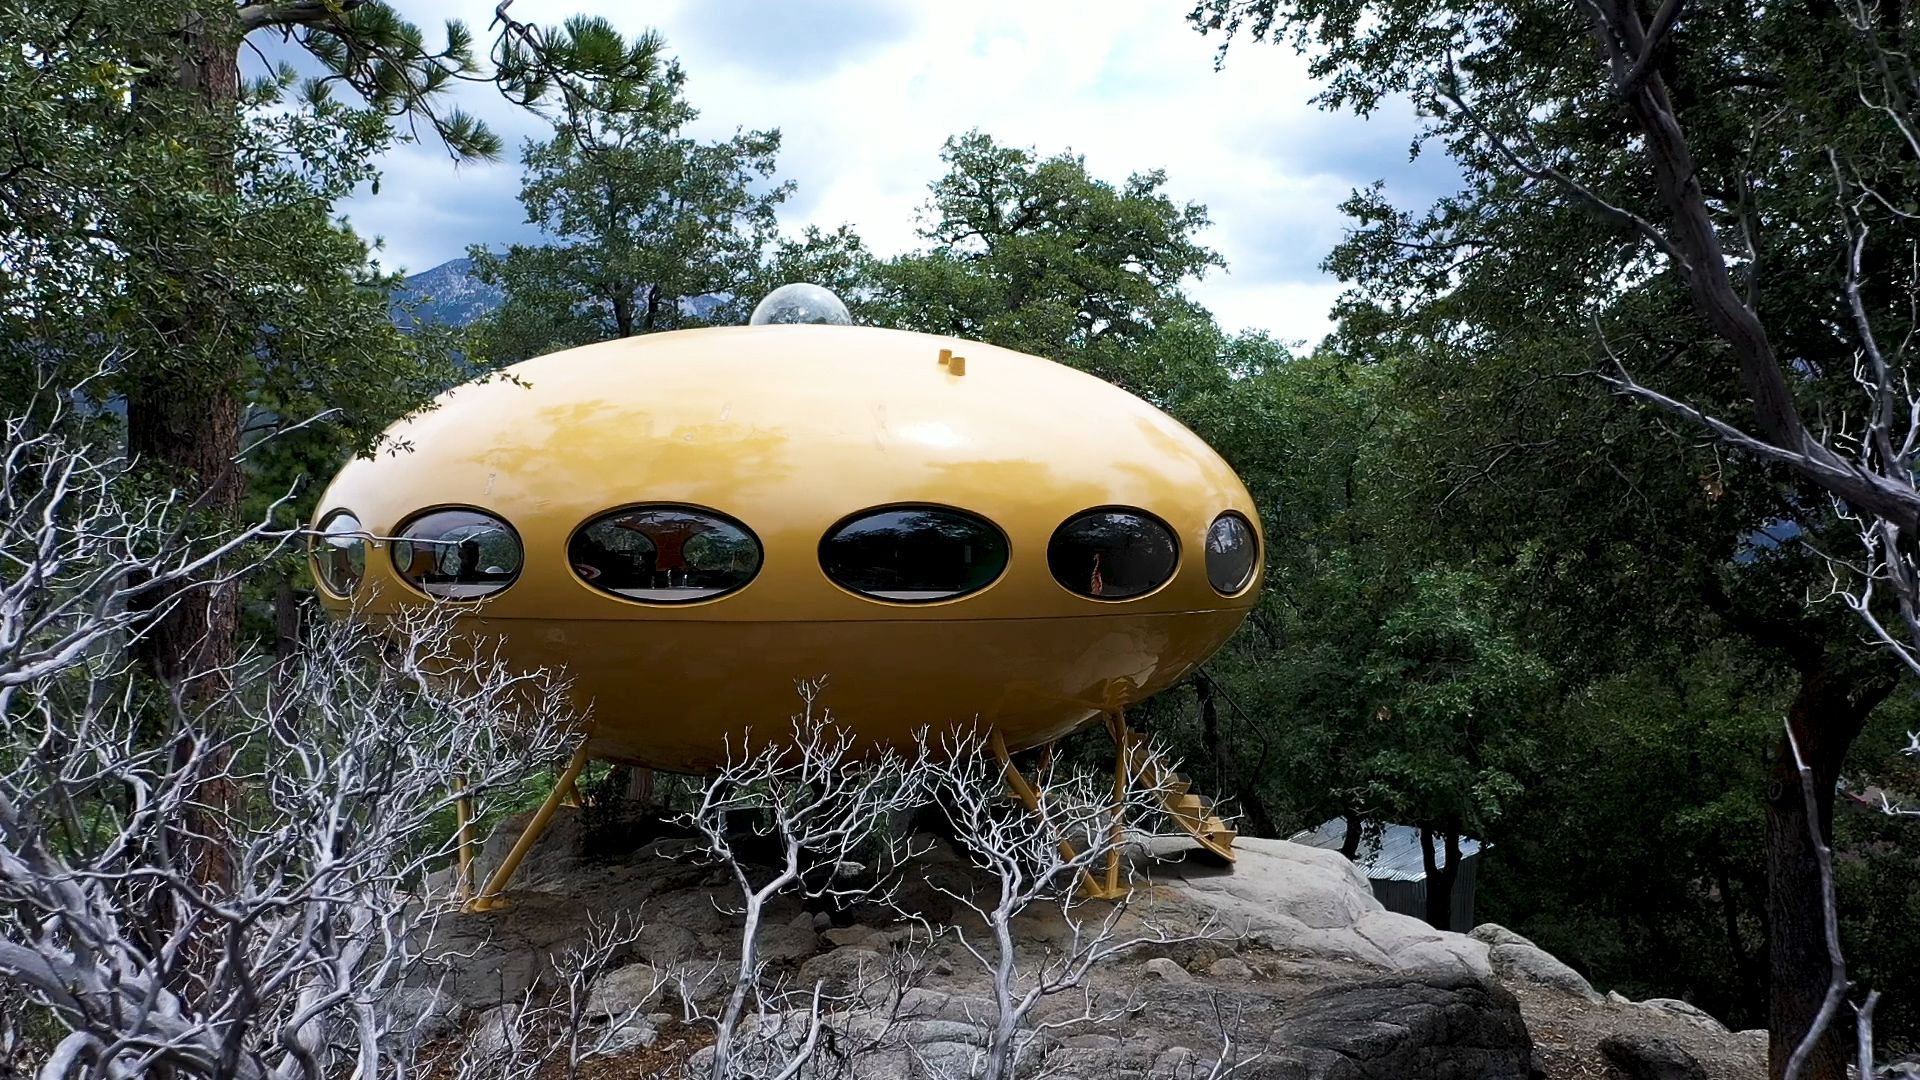 The Flying Saucer Shaped Futuro Home .cnn.com